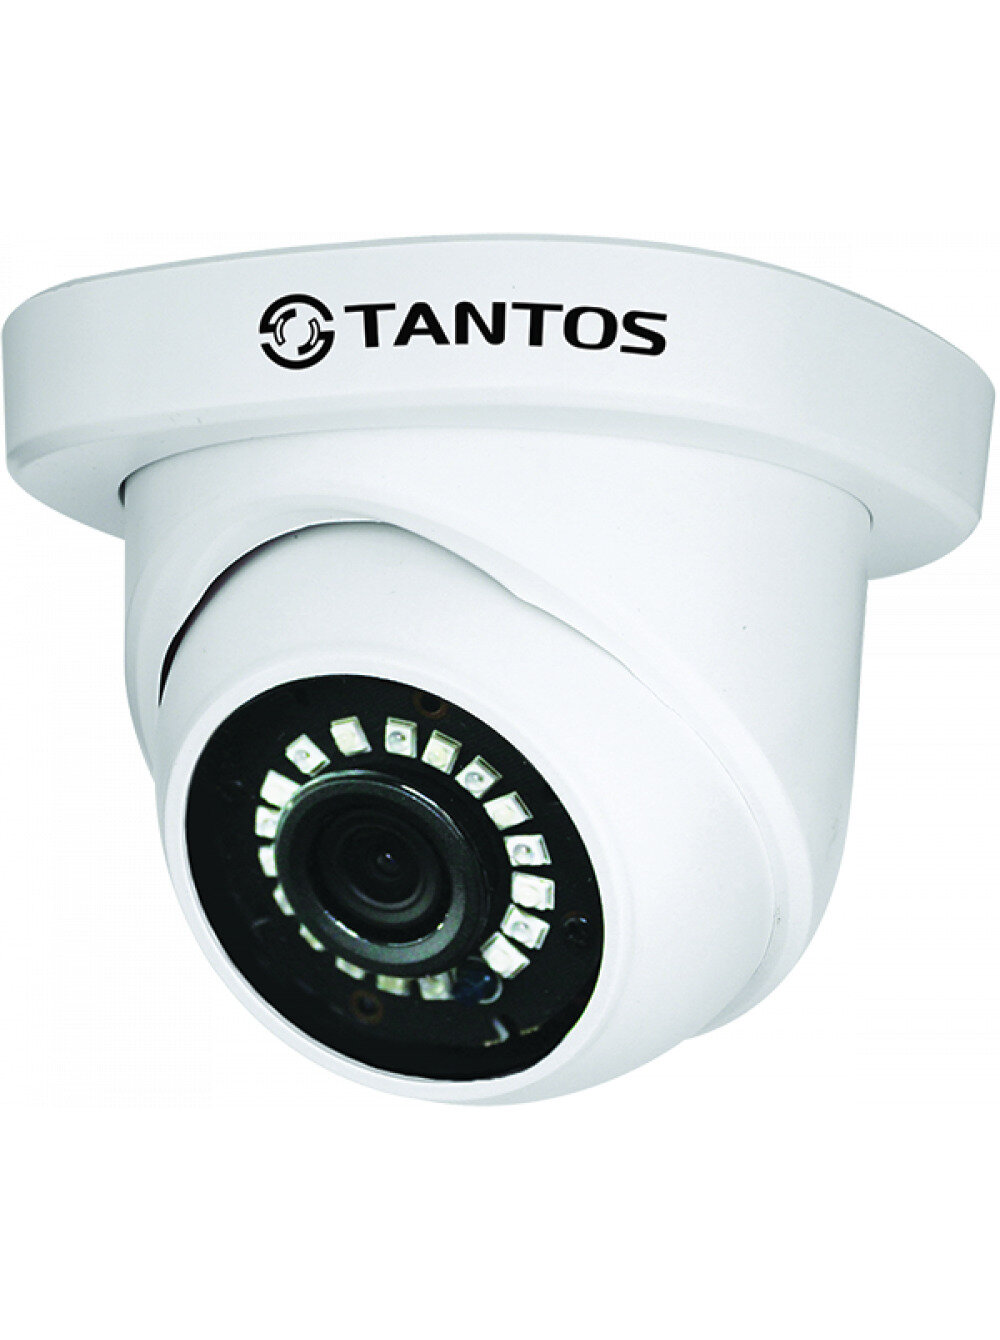 Видеокамера HD (AHD, TVI, CVI, CVBS) купольная внутренняя Tantos TSc-EB720HDf 3.6mm